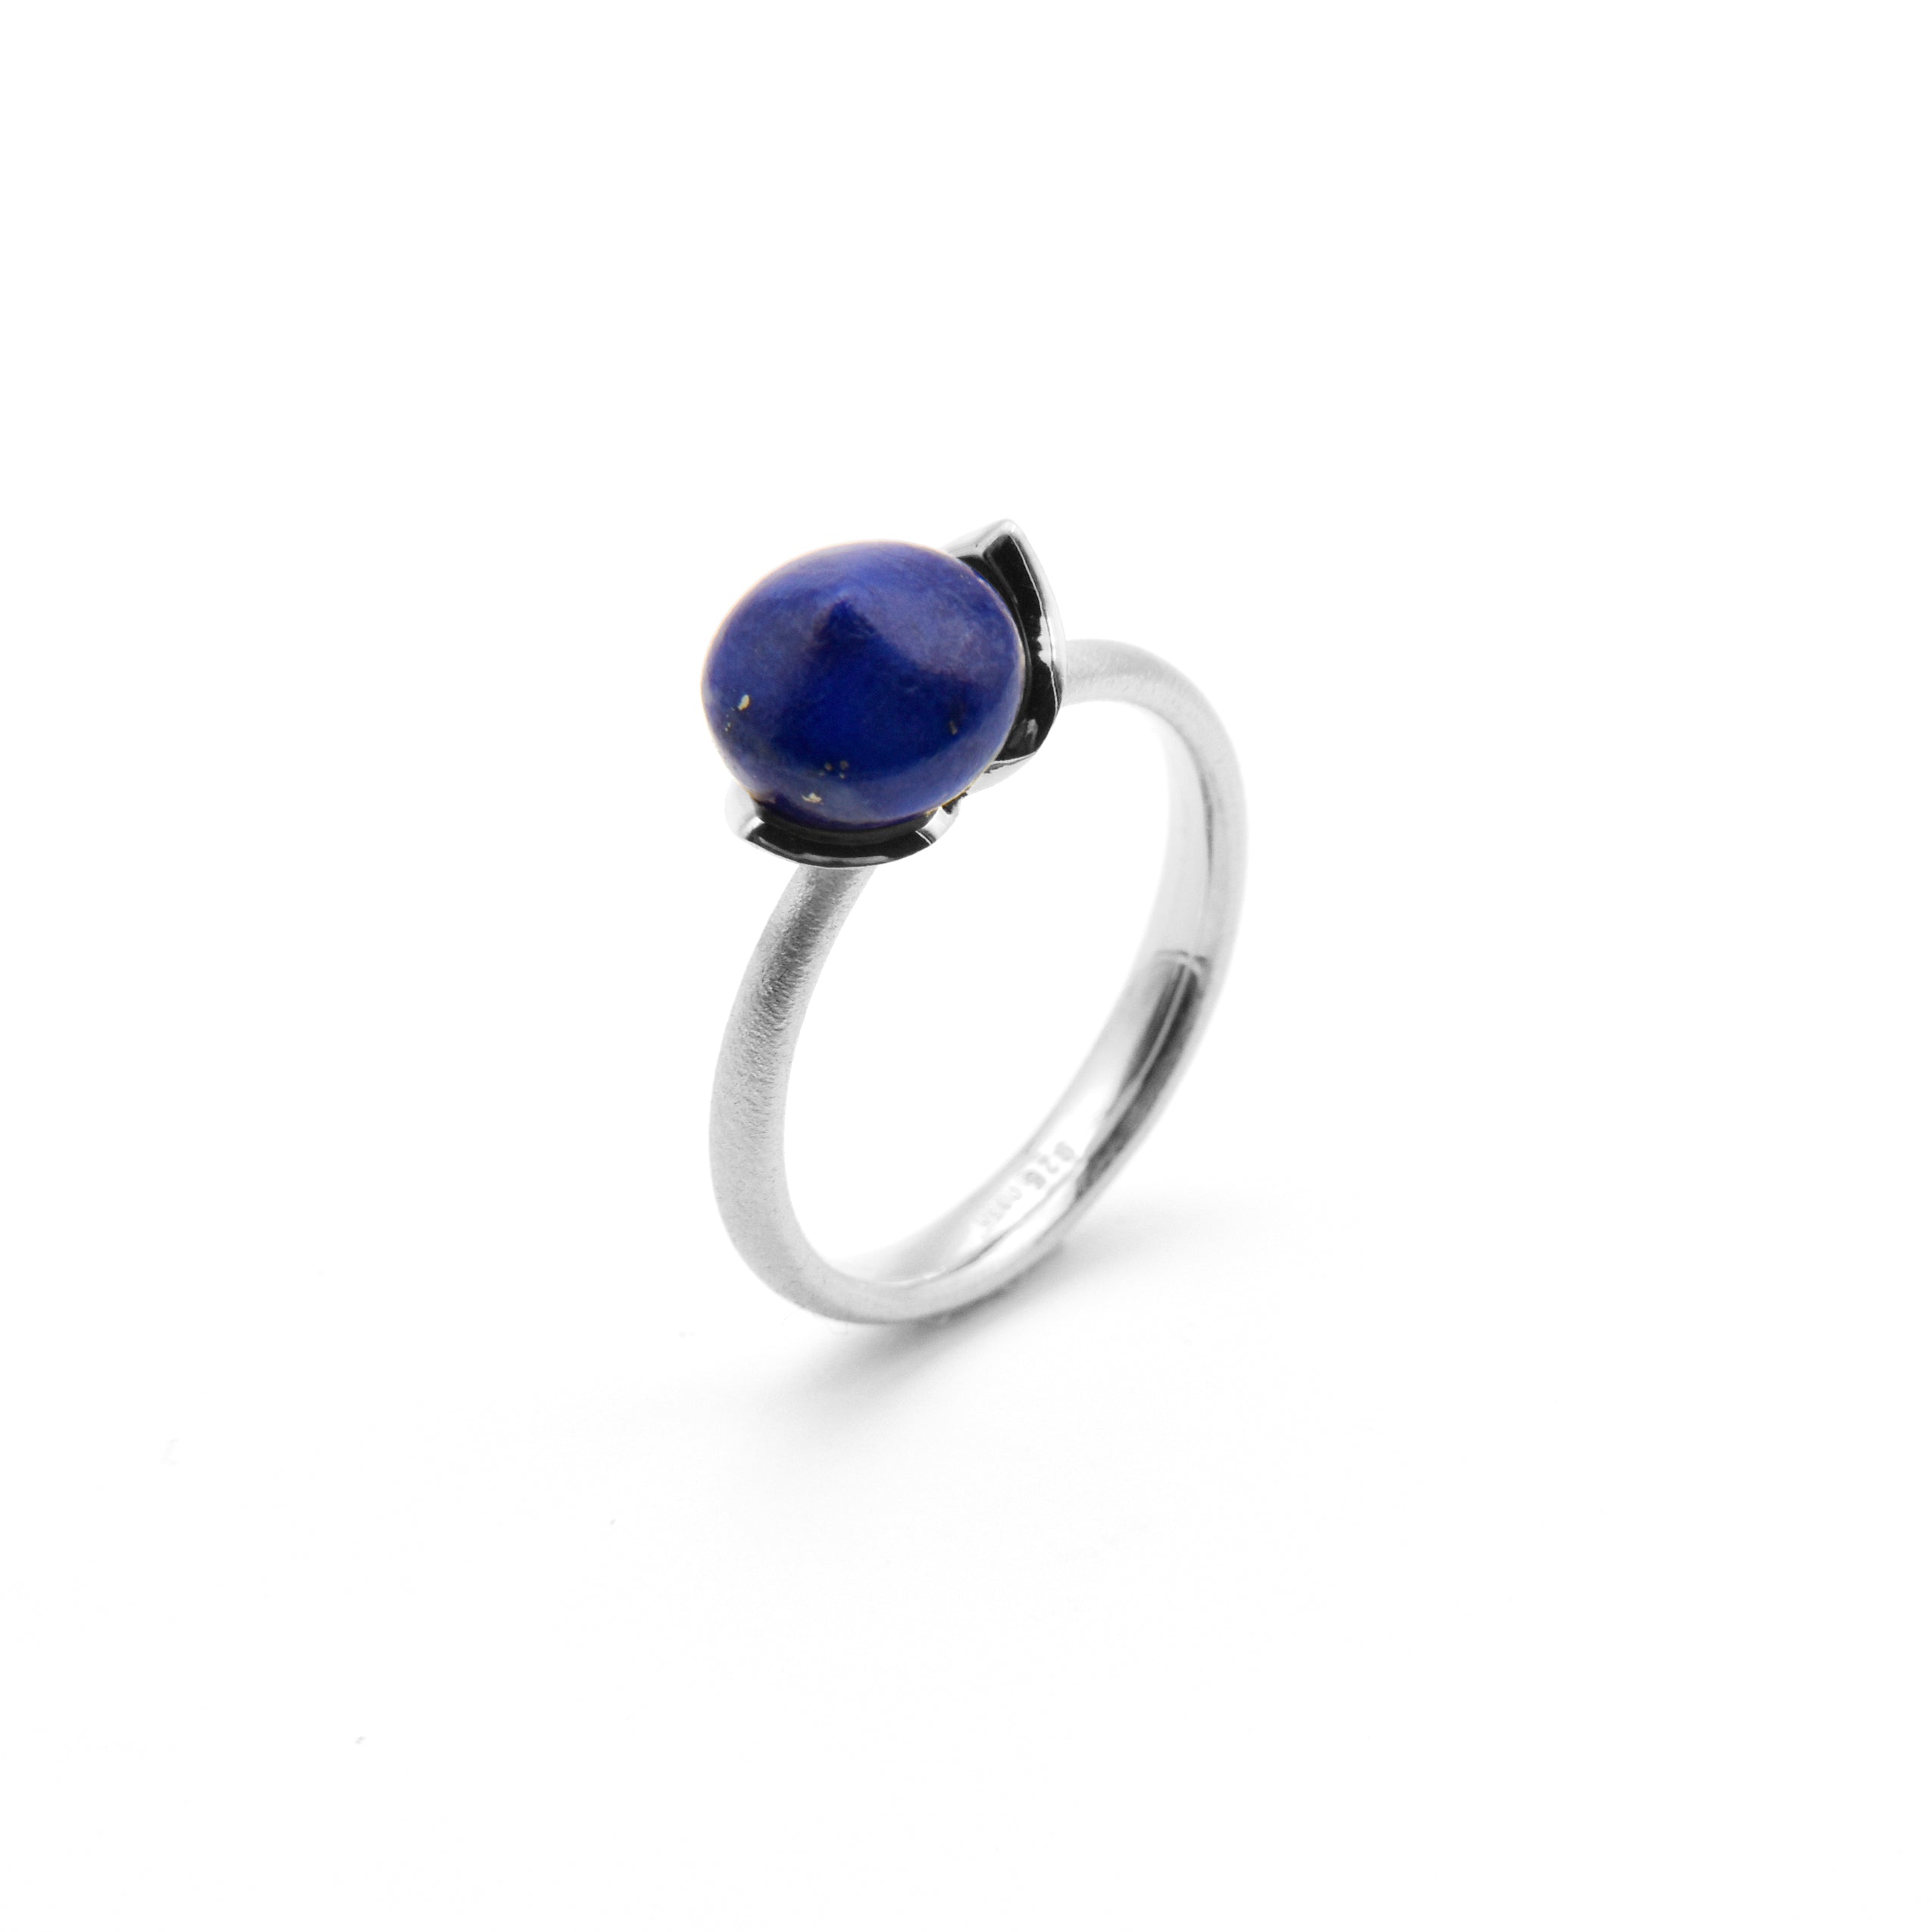 Dolce Ring "smal" mit Lapis Lazuli 925/-